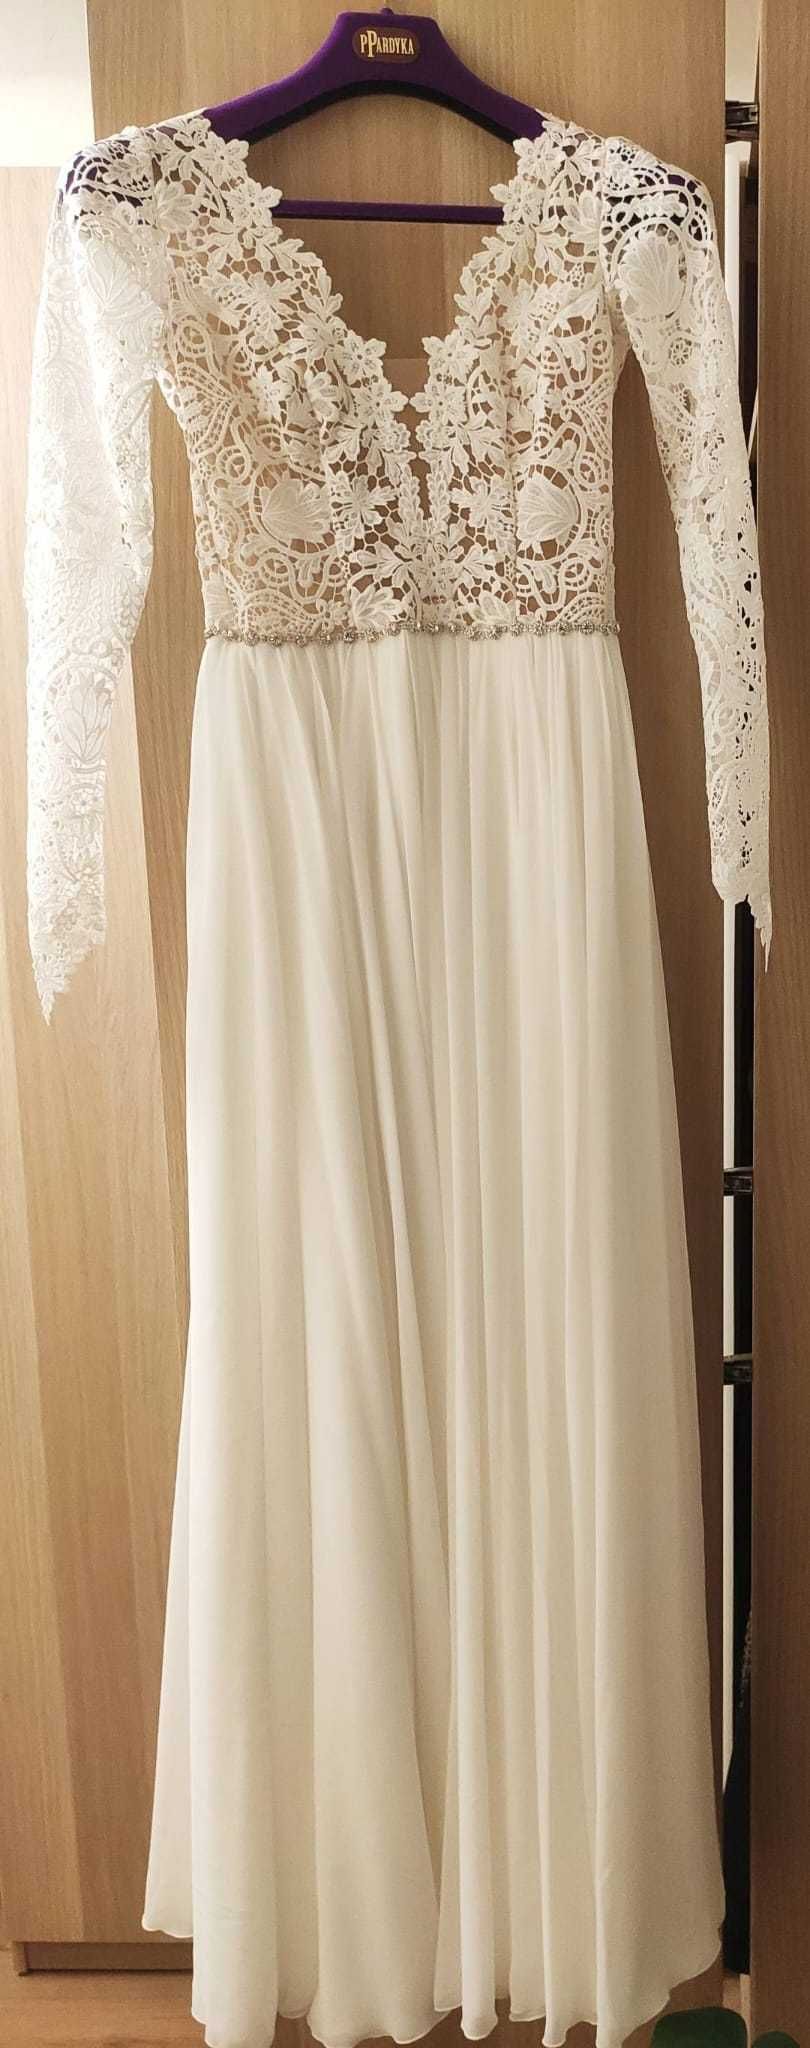 Suknia ślubna z długim rękawem